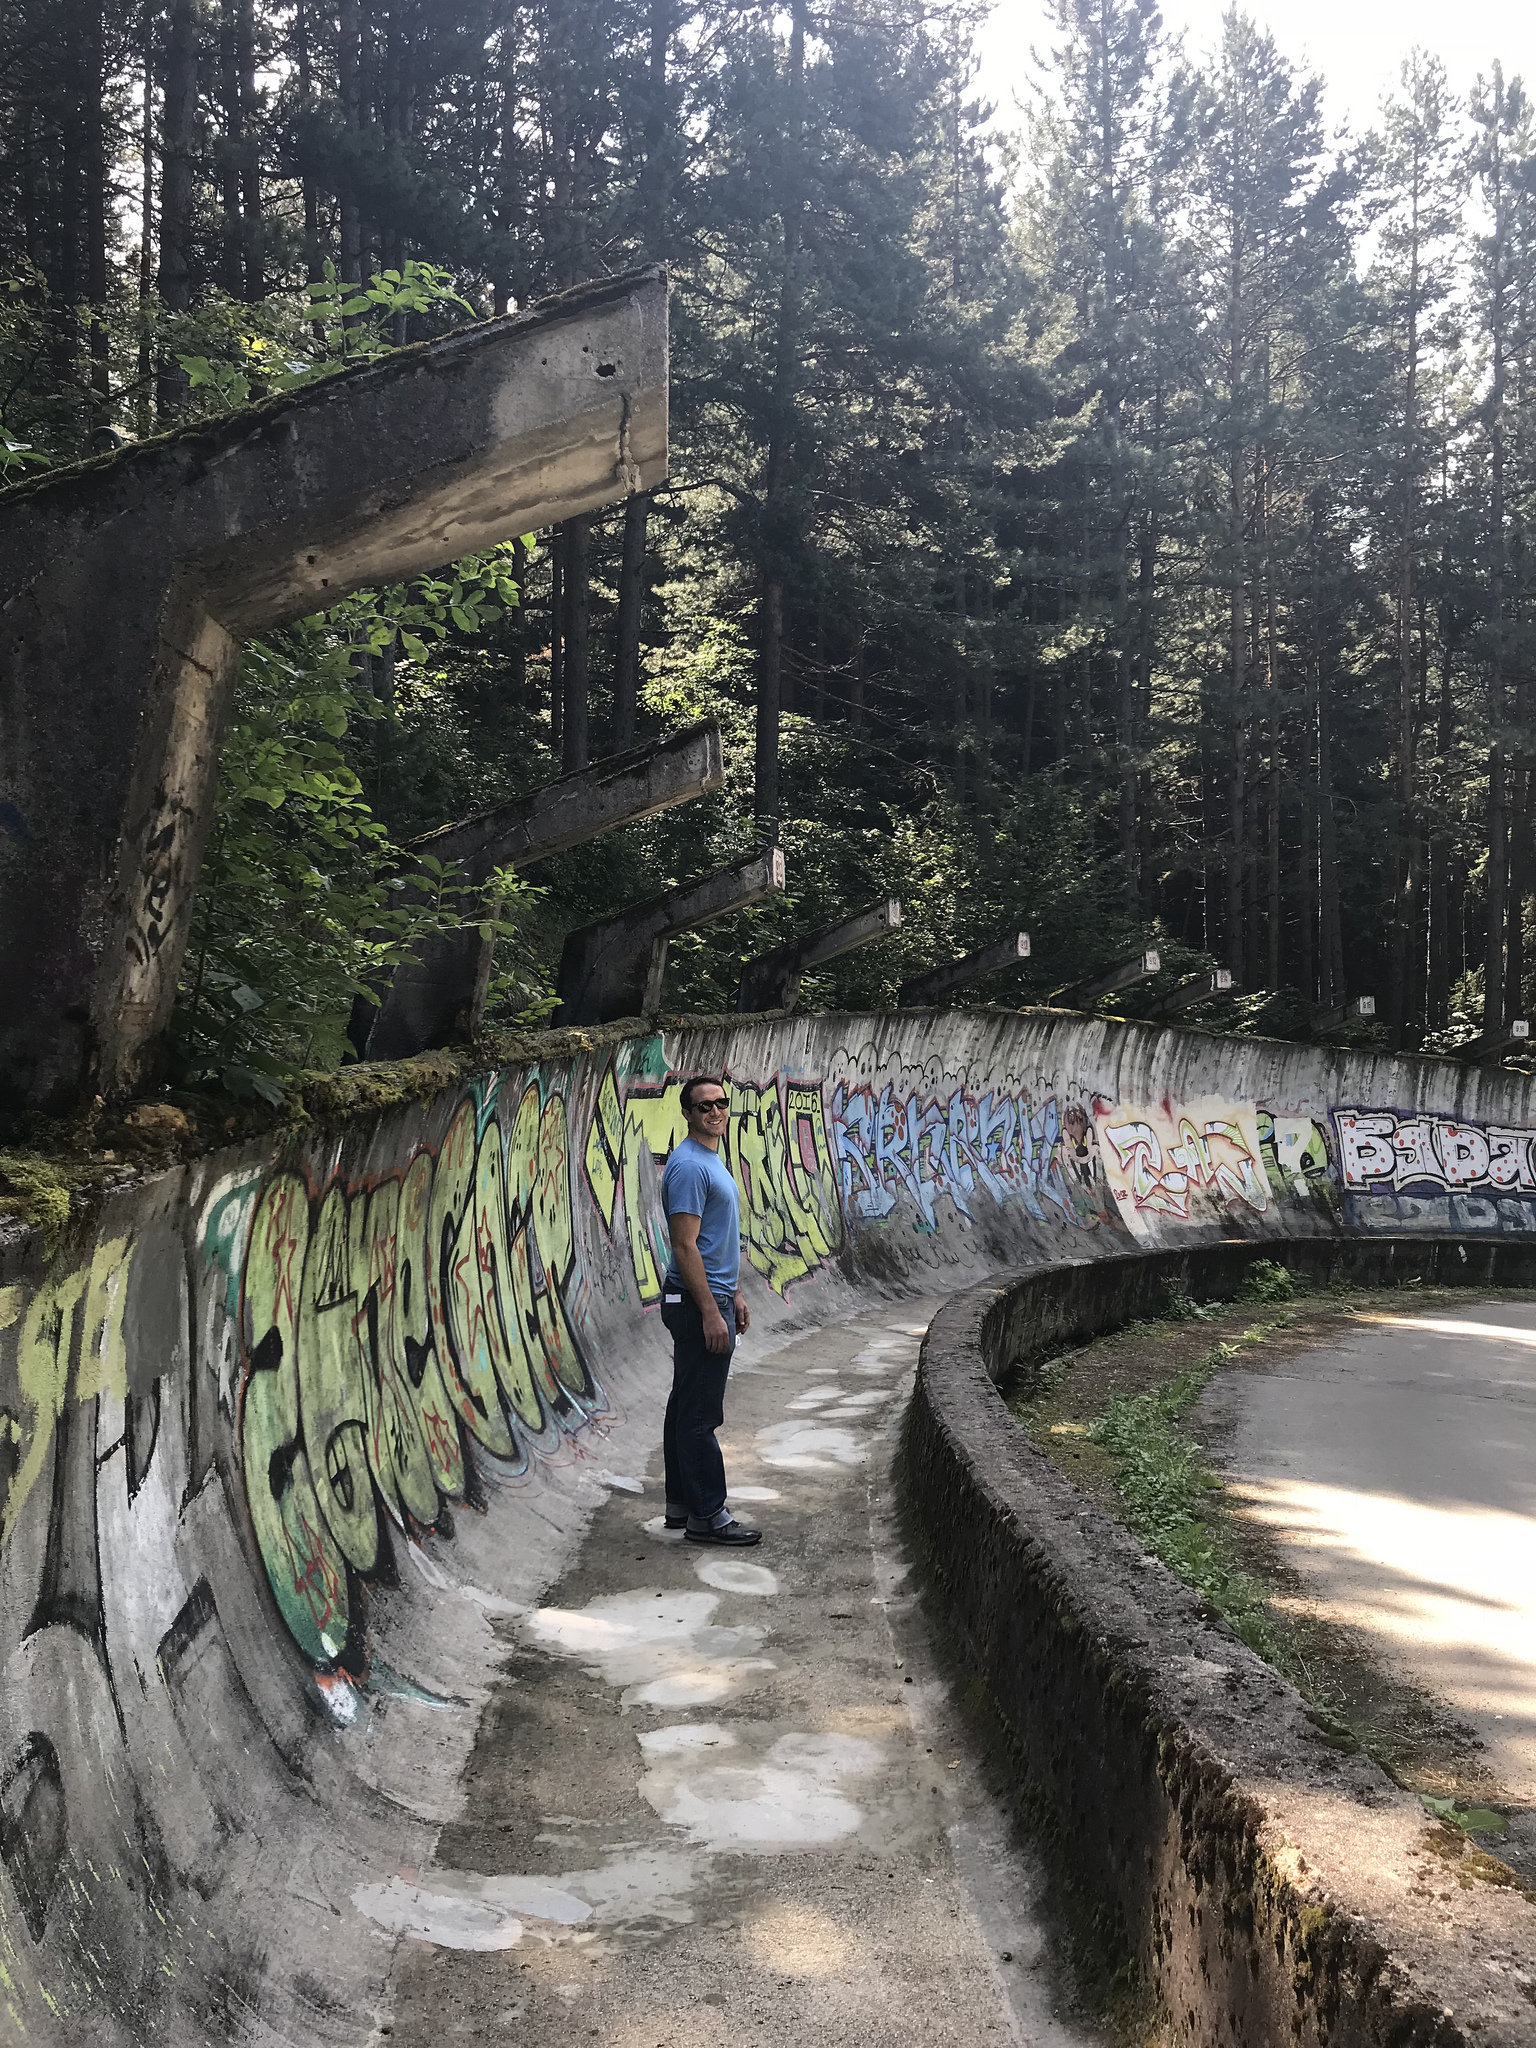 Dan at Sarajevo bobsled track